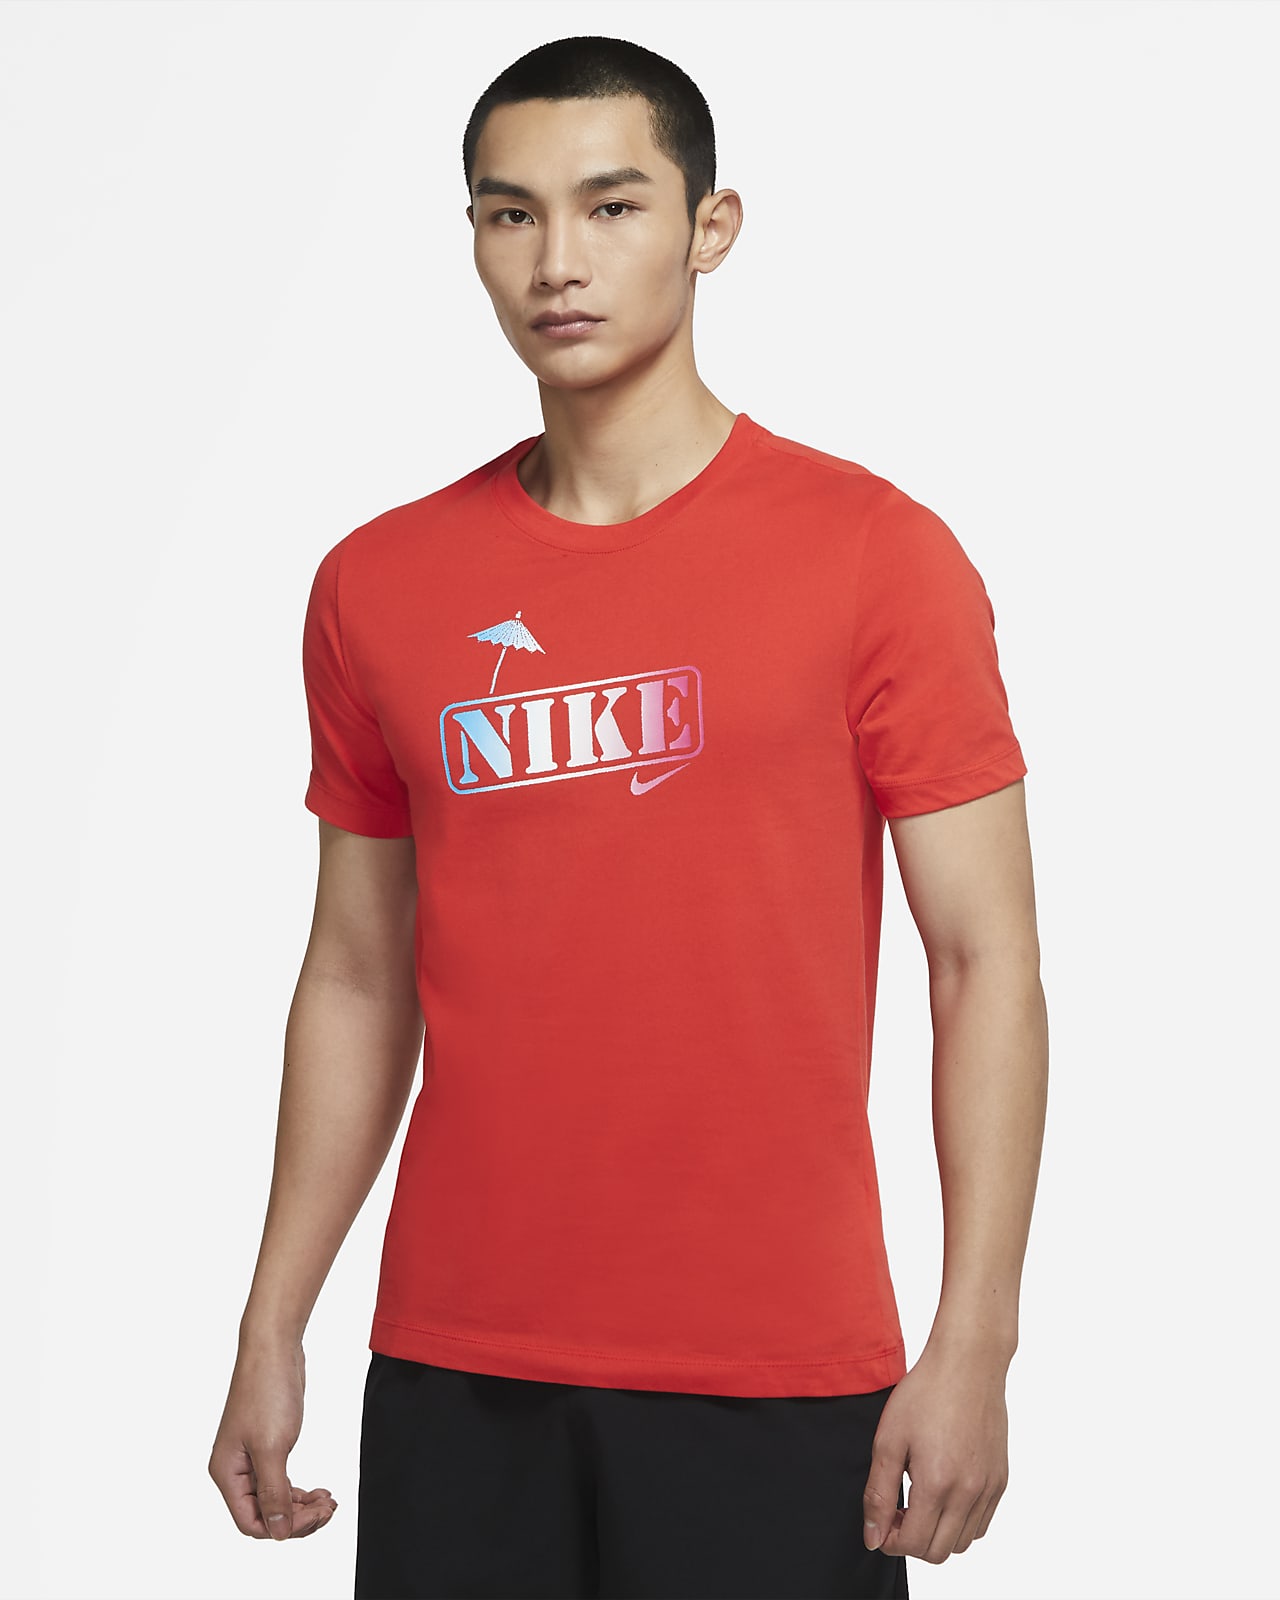 เสื้อยืดเทรนนิ่งผู้ชาย Nike Dri-FIT